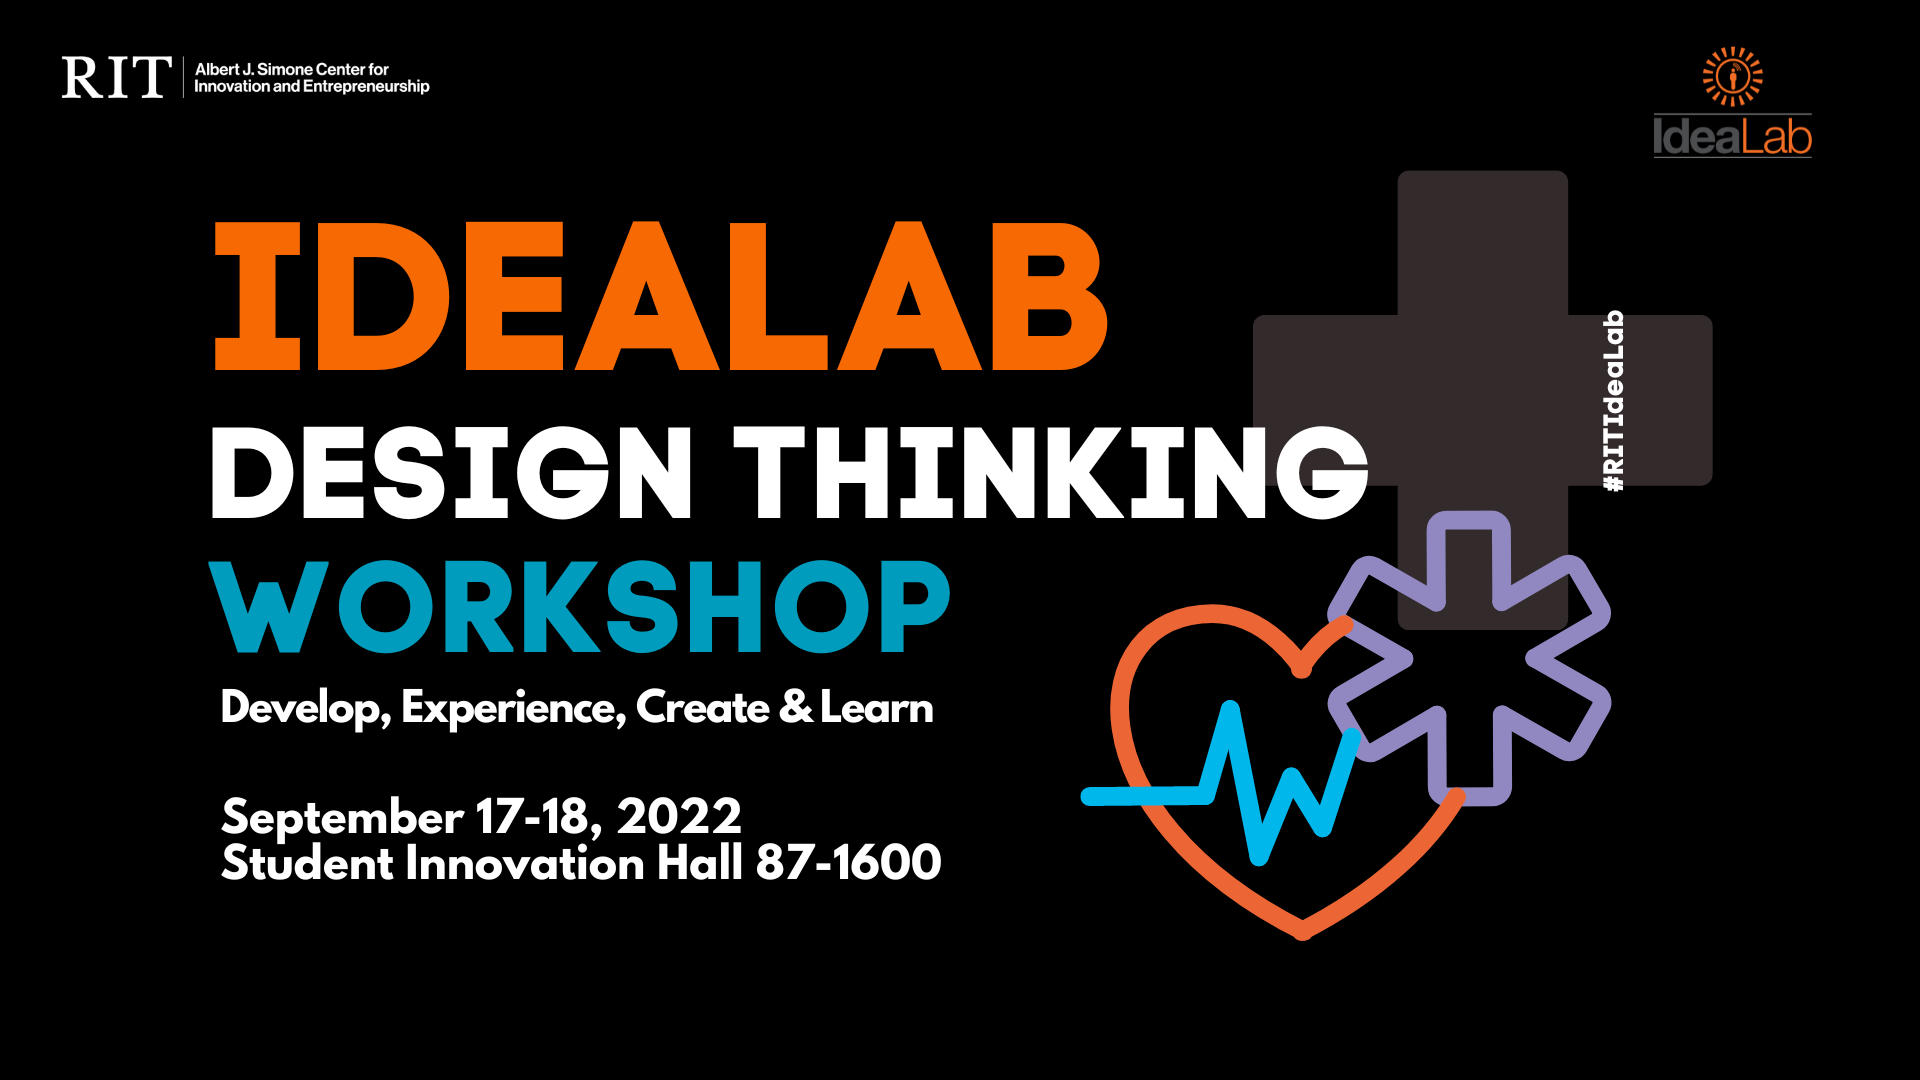 IdeaLab: Design Thinking Workshop